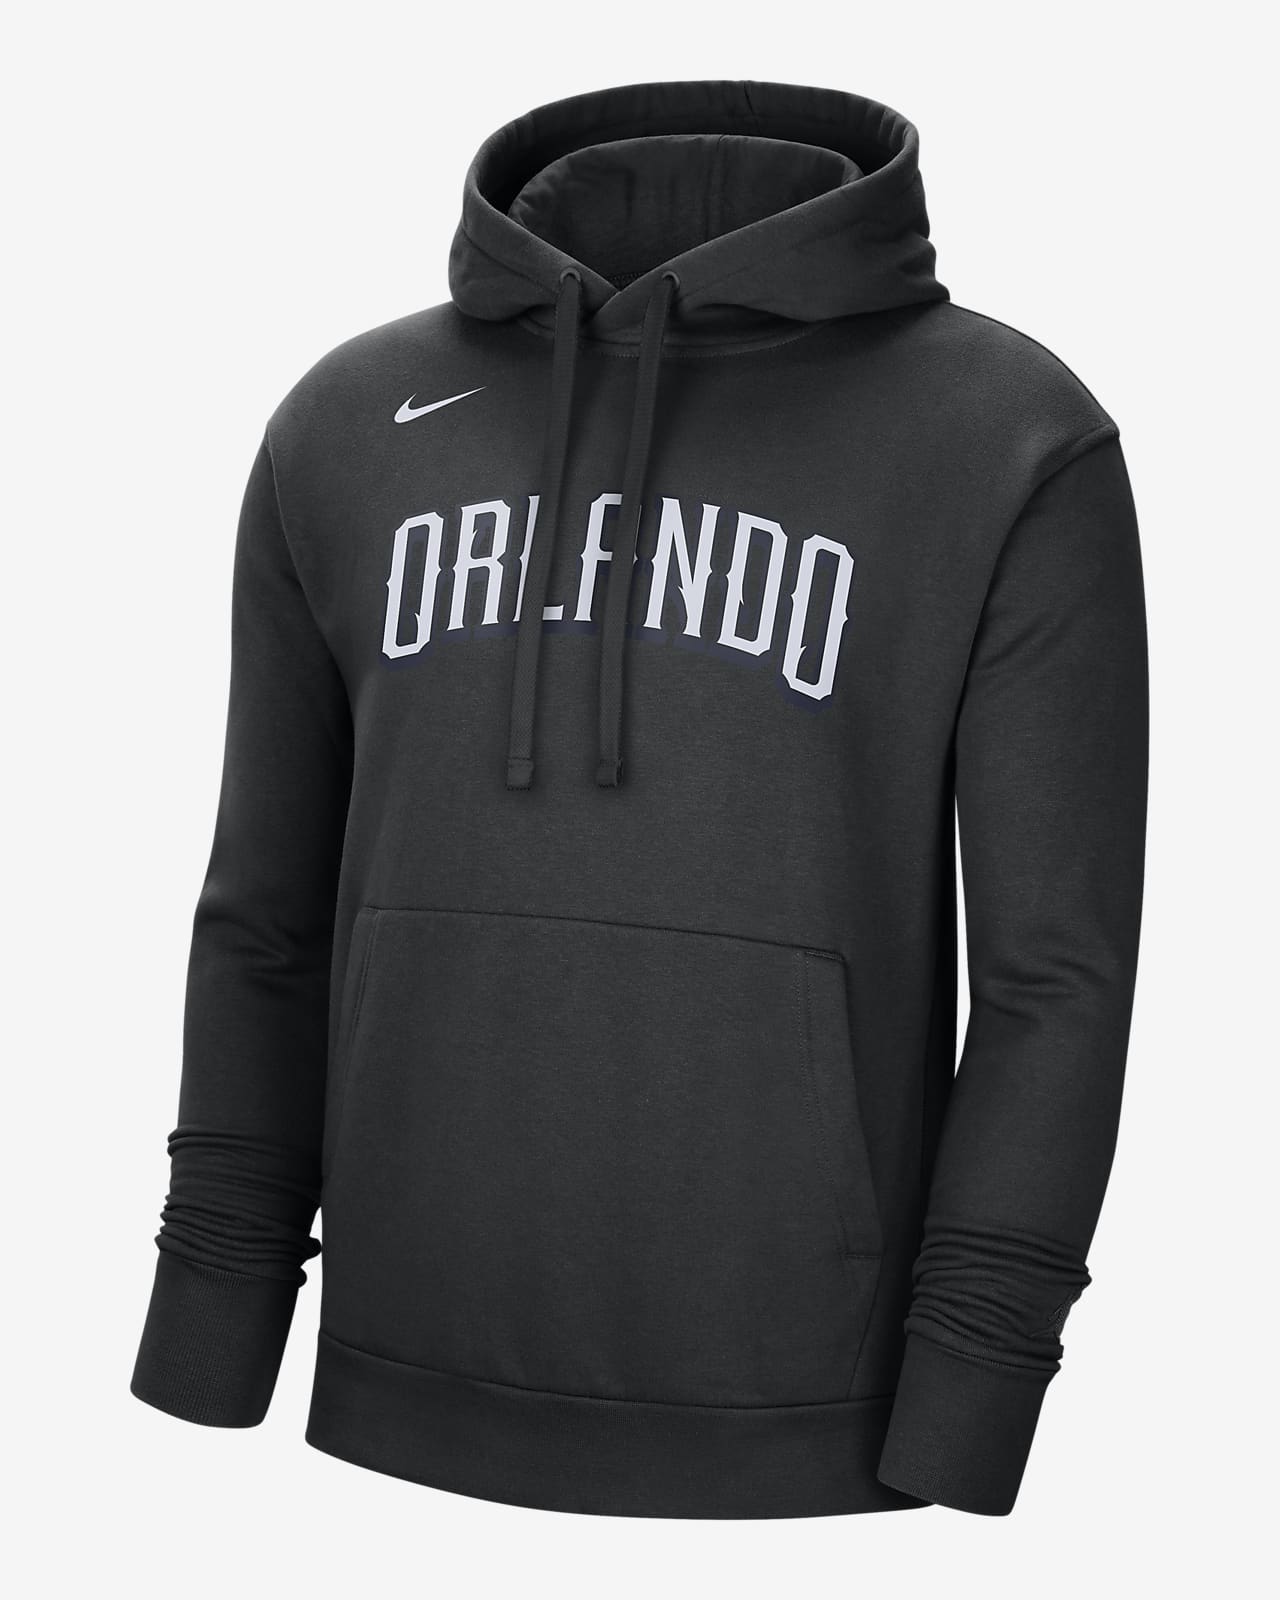 Residente no usado rebanada Sudadera con gorro sin cierre de tejido Fleece Nike de la NBA para hombre  Orlando Magic City Edition. Nike.com